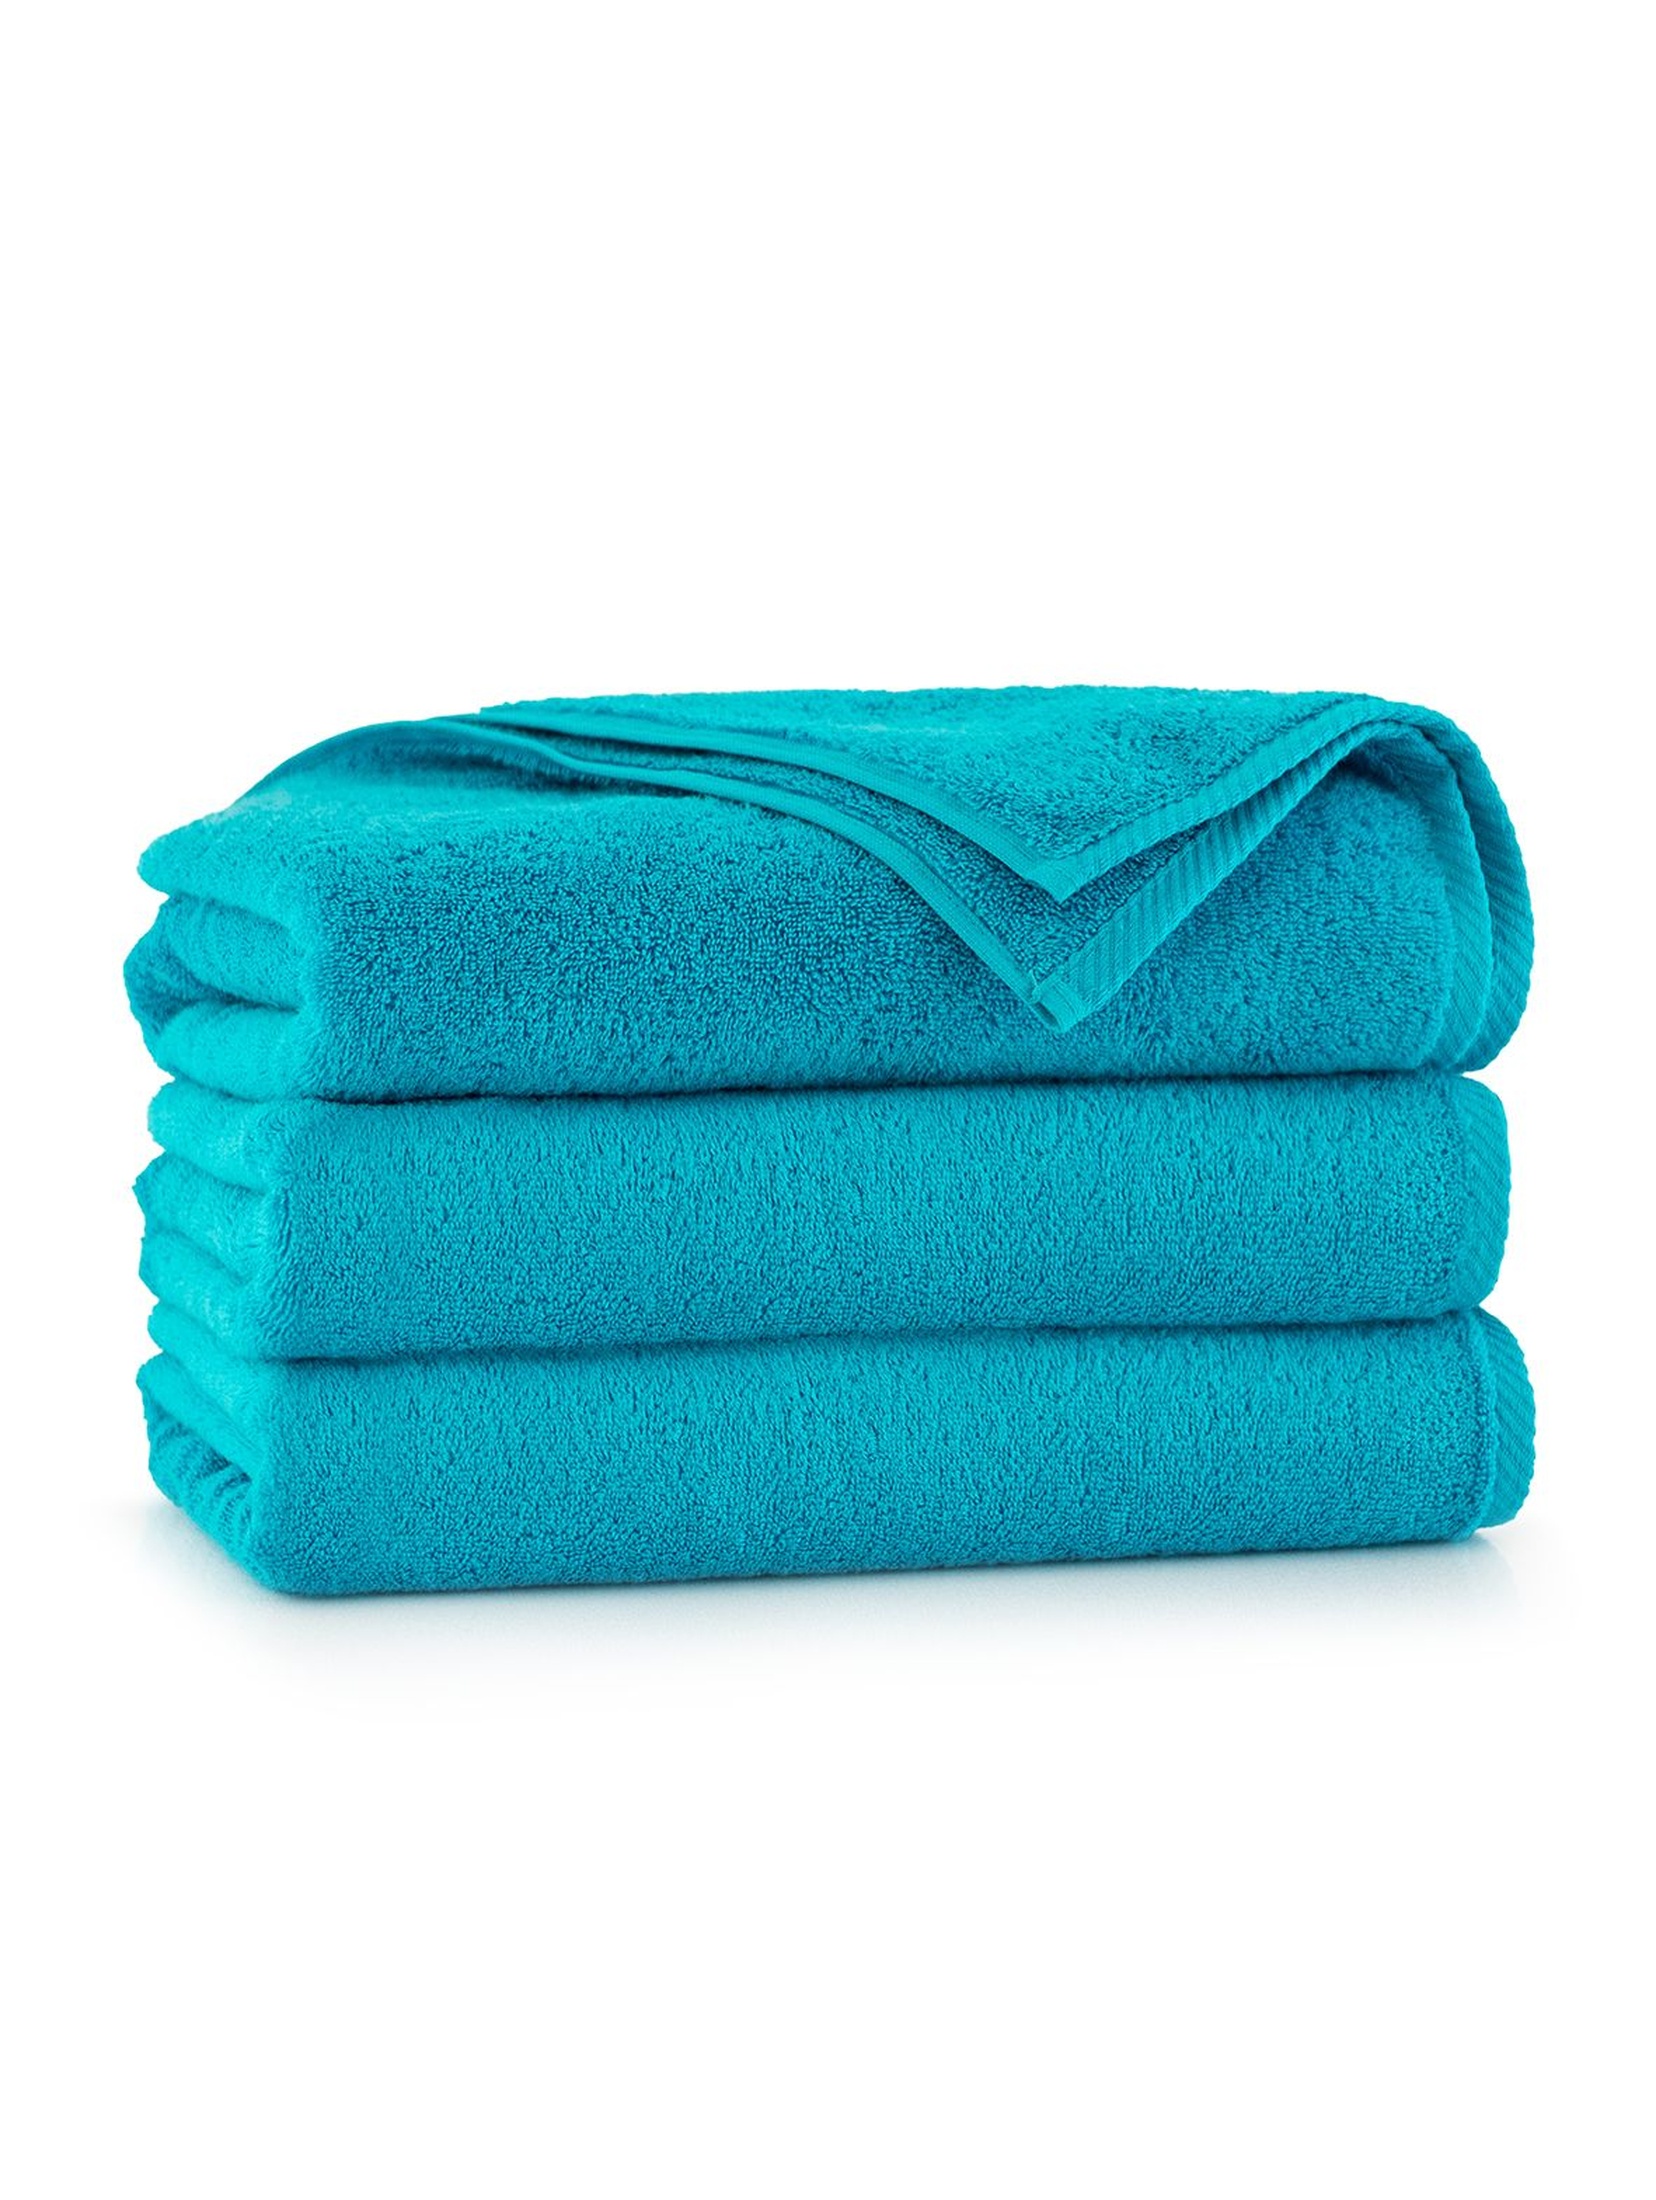 Ręcznik z bawełny egipskiej - niebieski 50x100cm